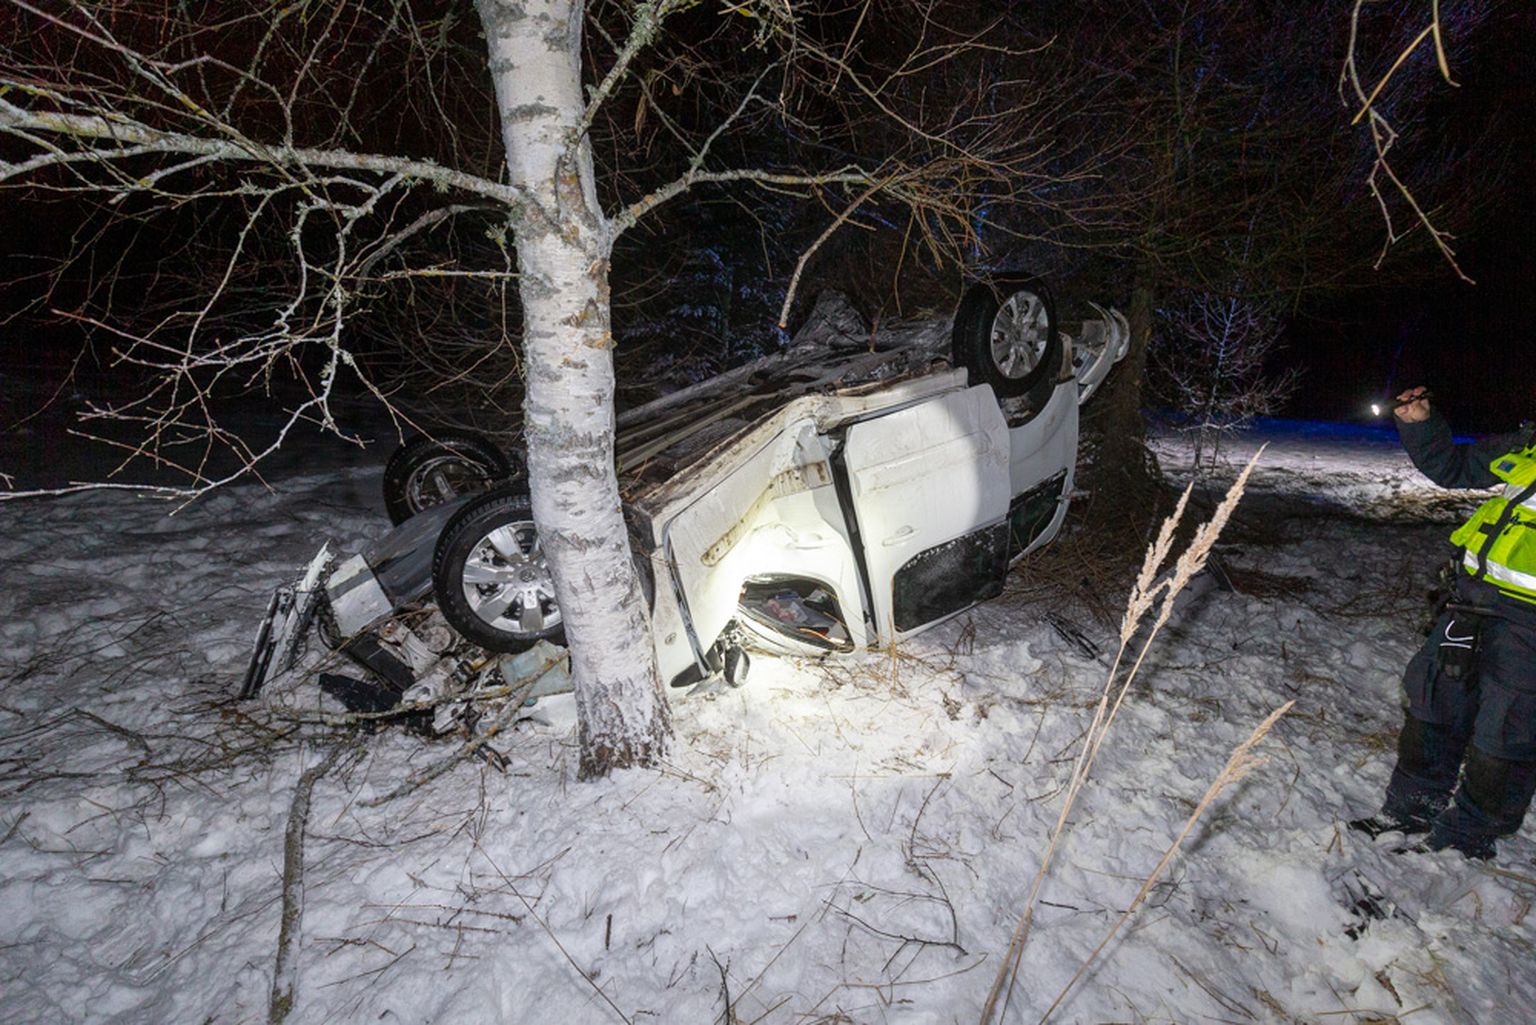 Esmaspäeva õhtul juhtus Loodi mõisa lähistel liiklusõnnetus, mille tagajärjel paiskus katusele kaubik Citroën.